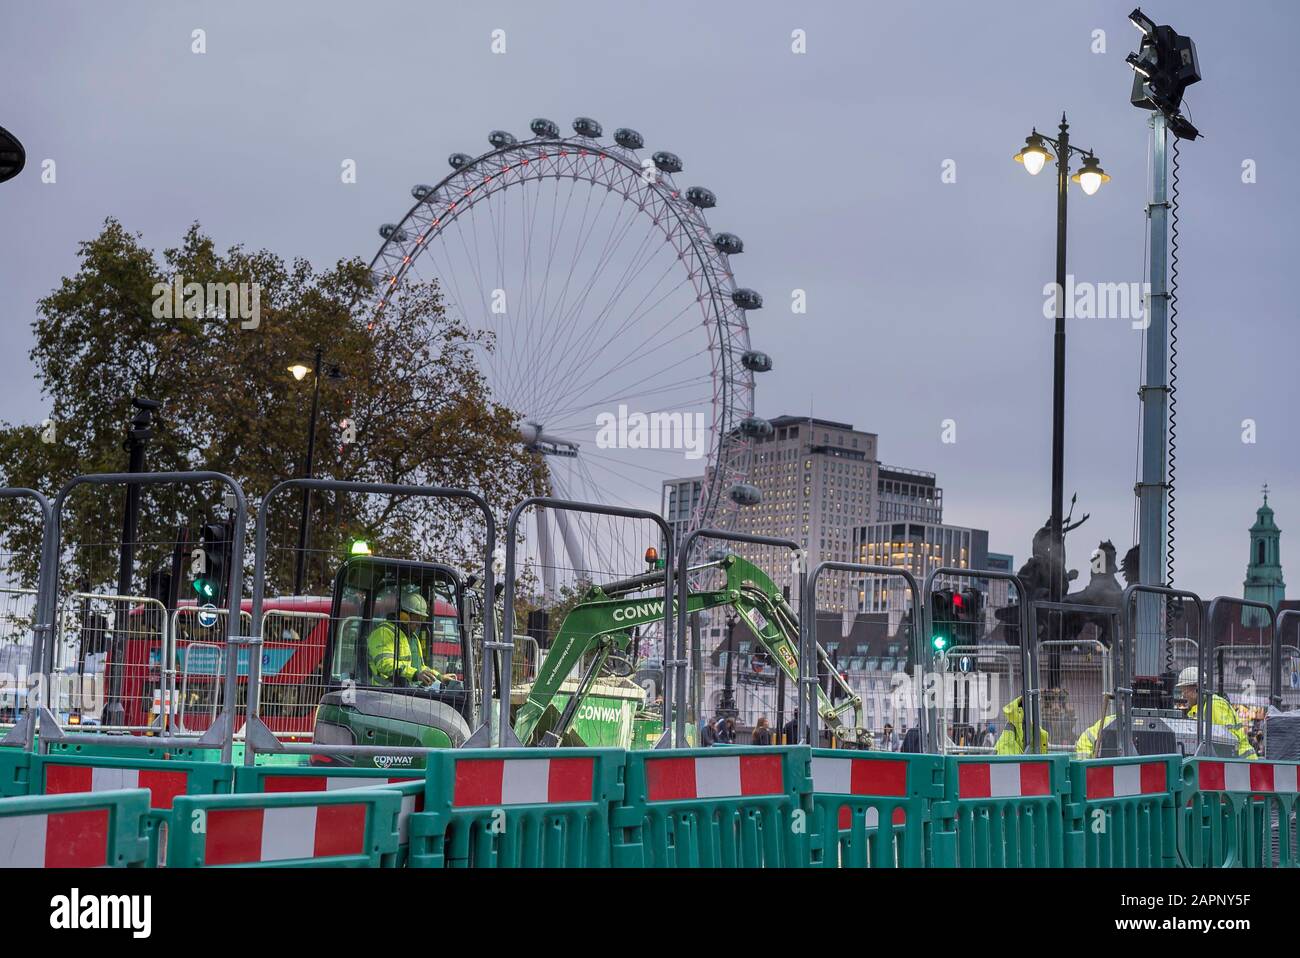 Vue en soirée du célèbre monument The London Eye (roue d'observation en porte-à-faux), vue sur les routes du Westminster Bridge, Londres, Royaume-Uni. Banque D'Images